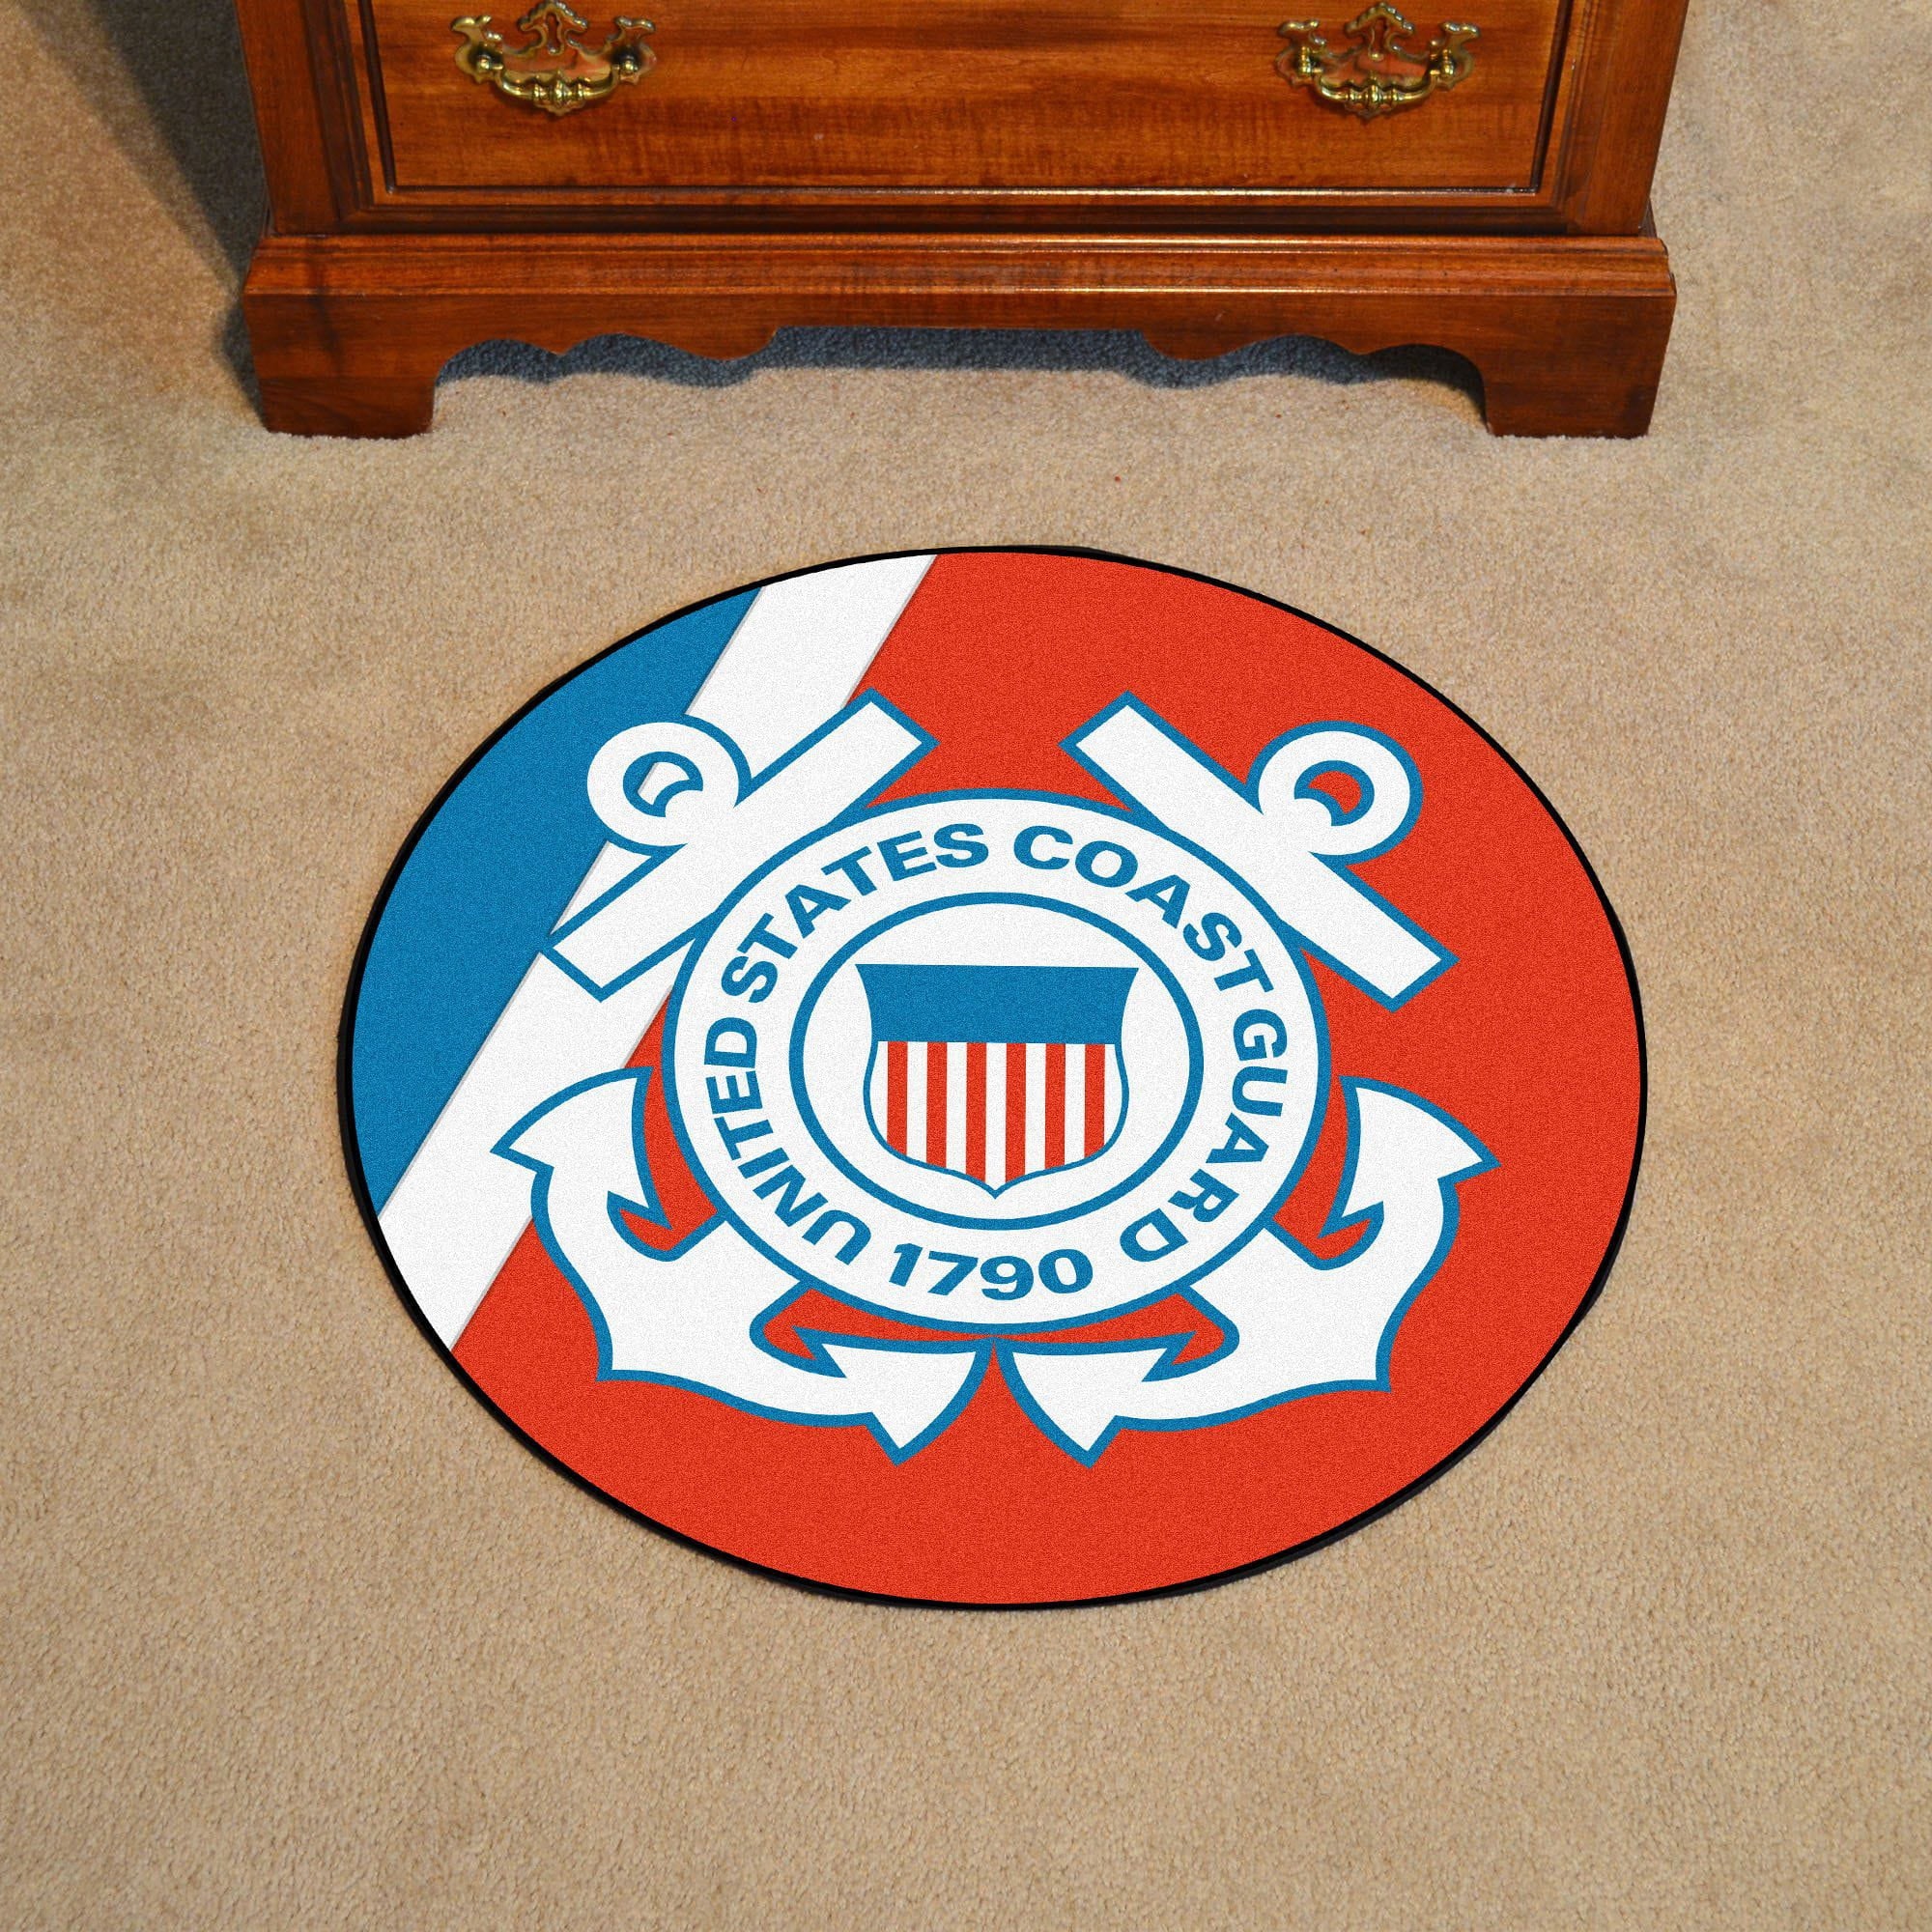 U.S. Coast Guard Round Mat - 44"